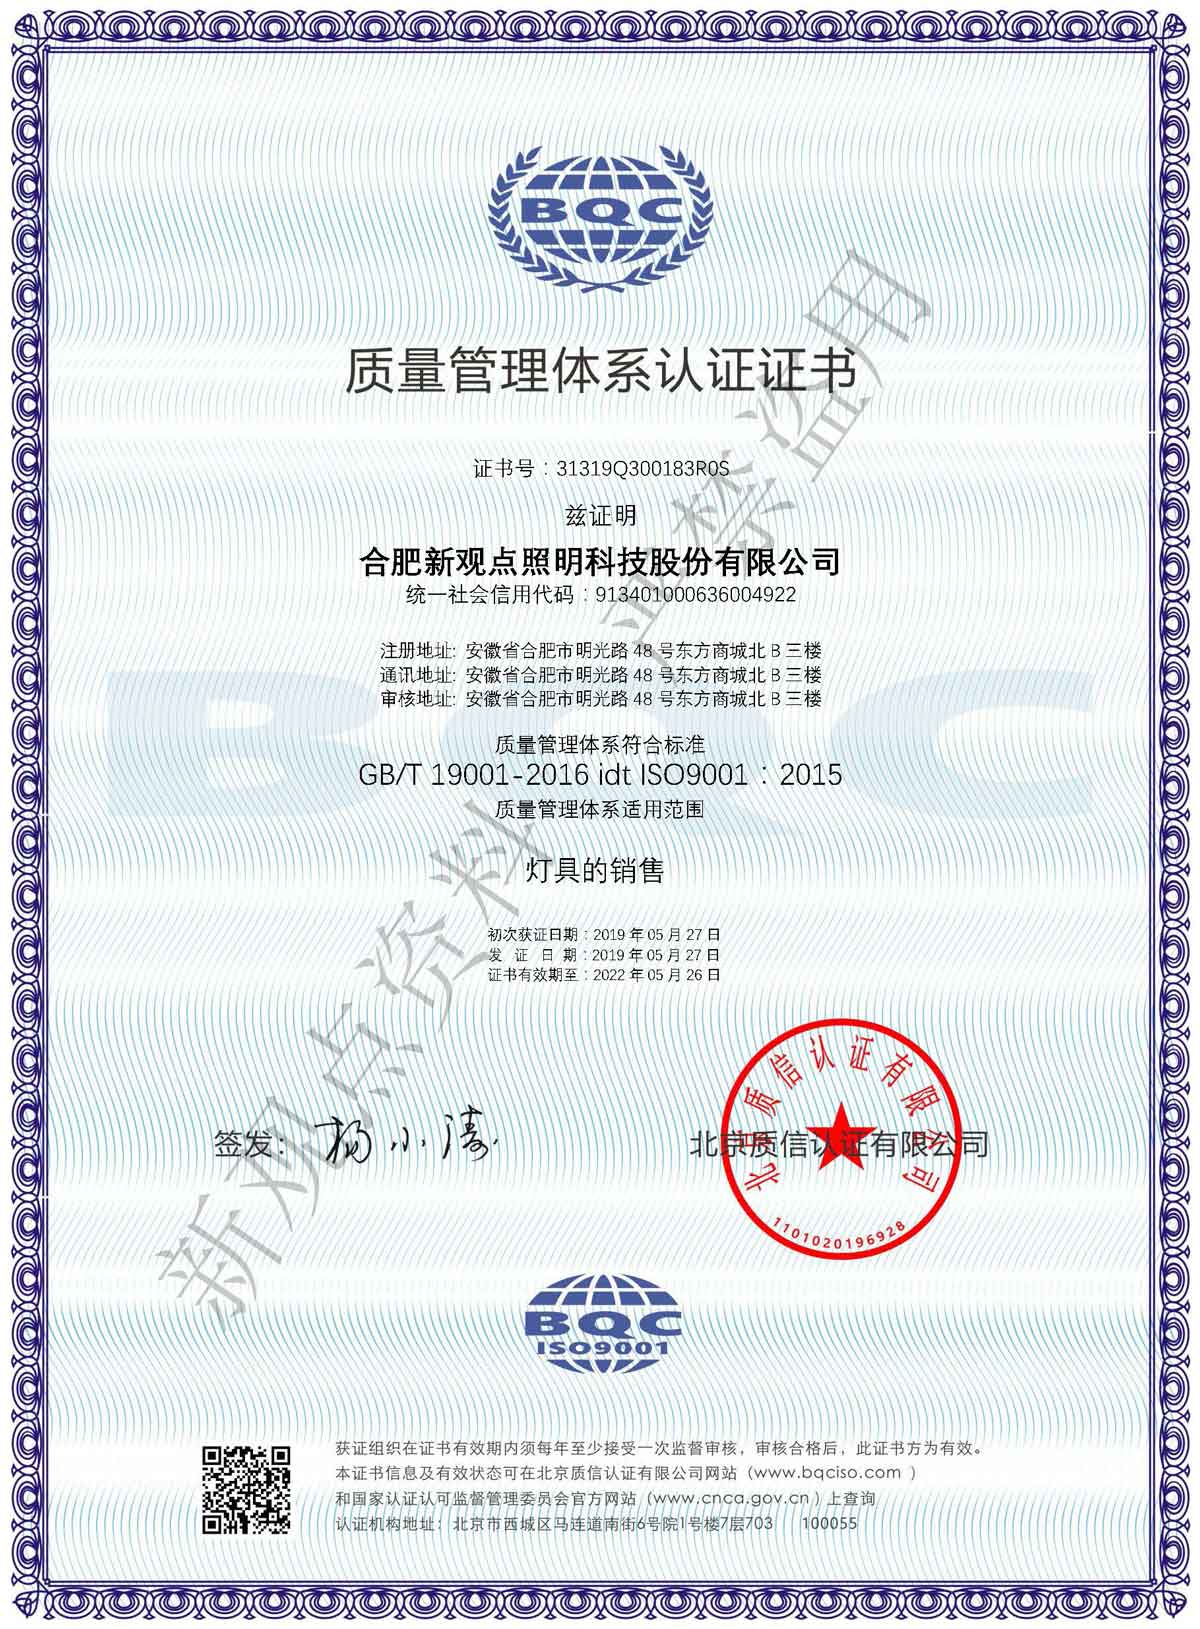 3-1质量管理体系认证-中文证书.jpg